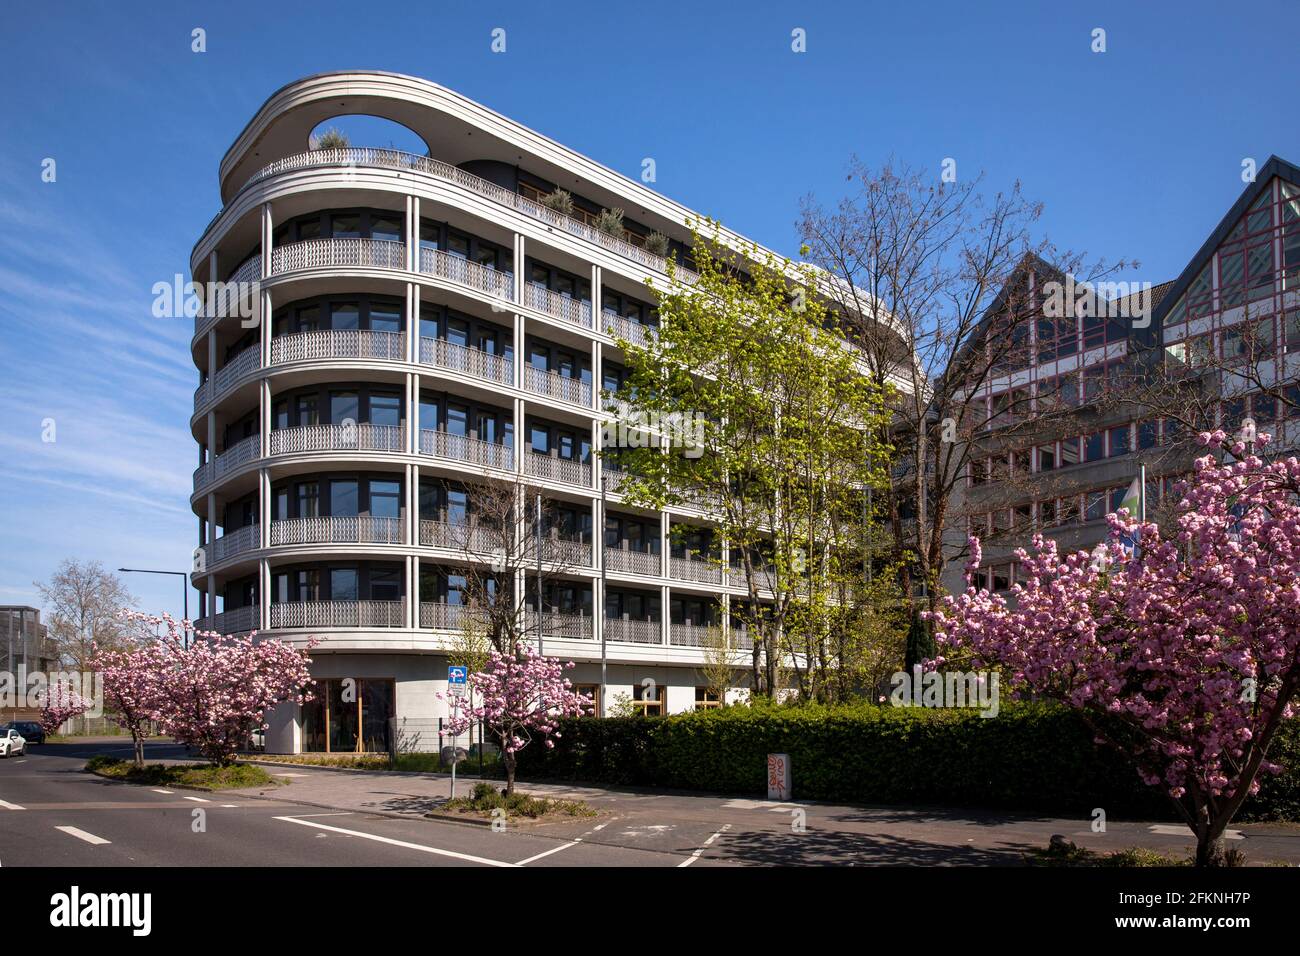 Das Bürogebäude K8 an der Kaltenbornweg im Stadtteil Deutz, Design by Format Architektur, Köln, Germany. das Buerogebaeude K8 am Kal Stockfoto